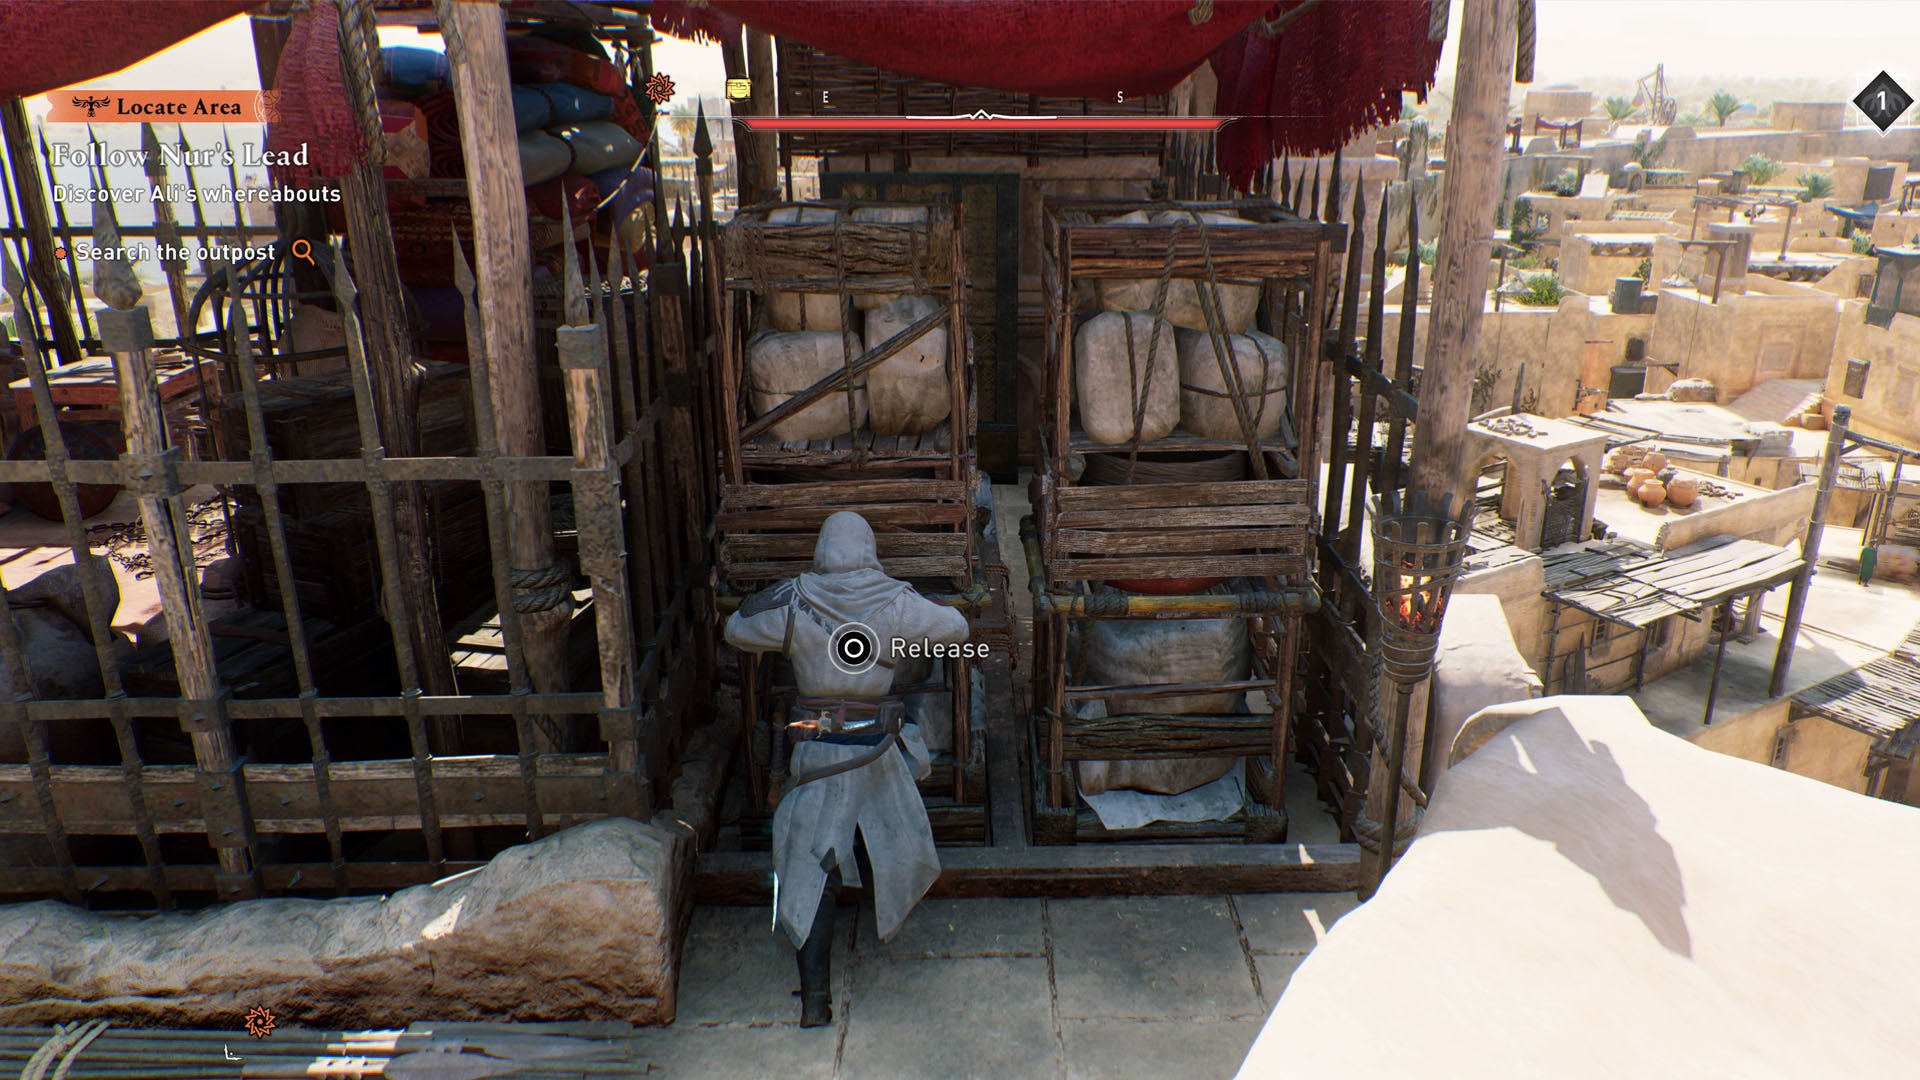 Assassins Creed Mirage Khurasan Gate Guardhouse Gear Puzzle del cofre, Basim está empujando la primera caja móvil a la izquierda.